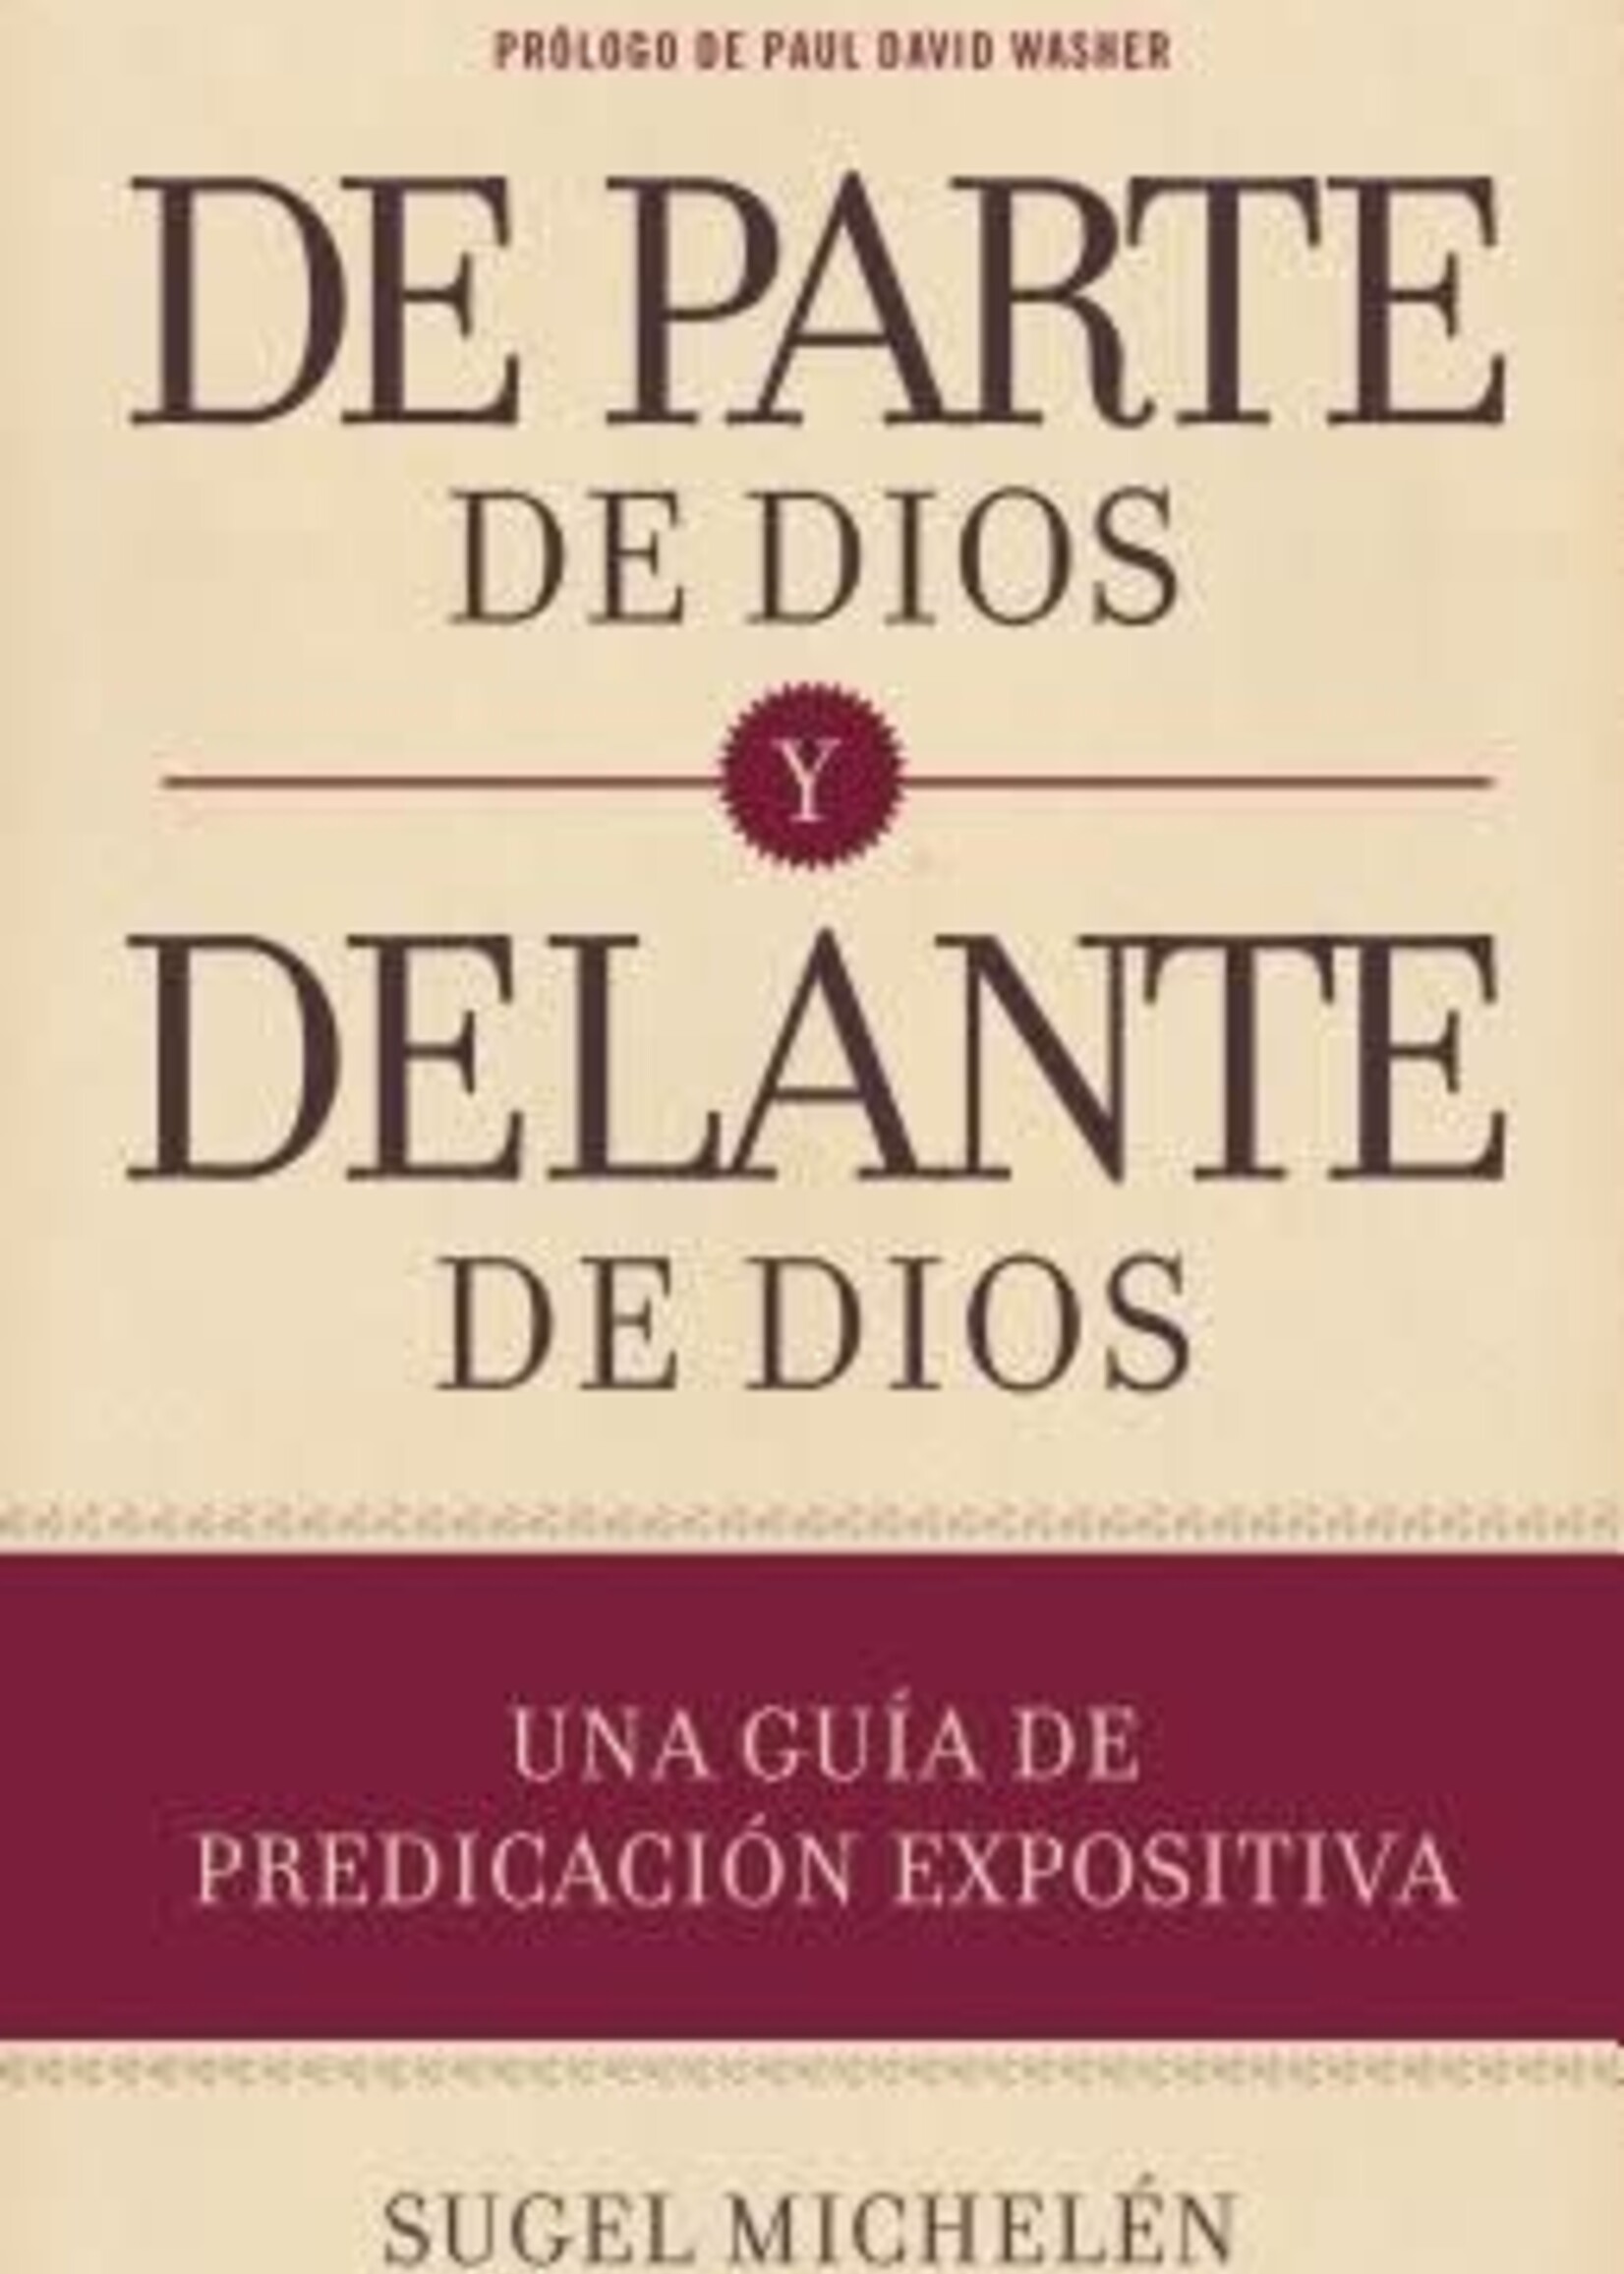 HOLMAN EN ESPANOL DE PARTE DE DIOS Y DELANTE DE DIOS